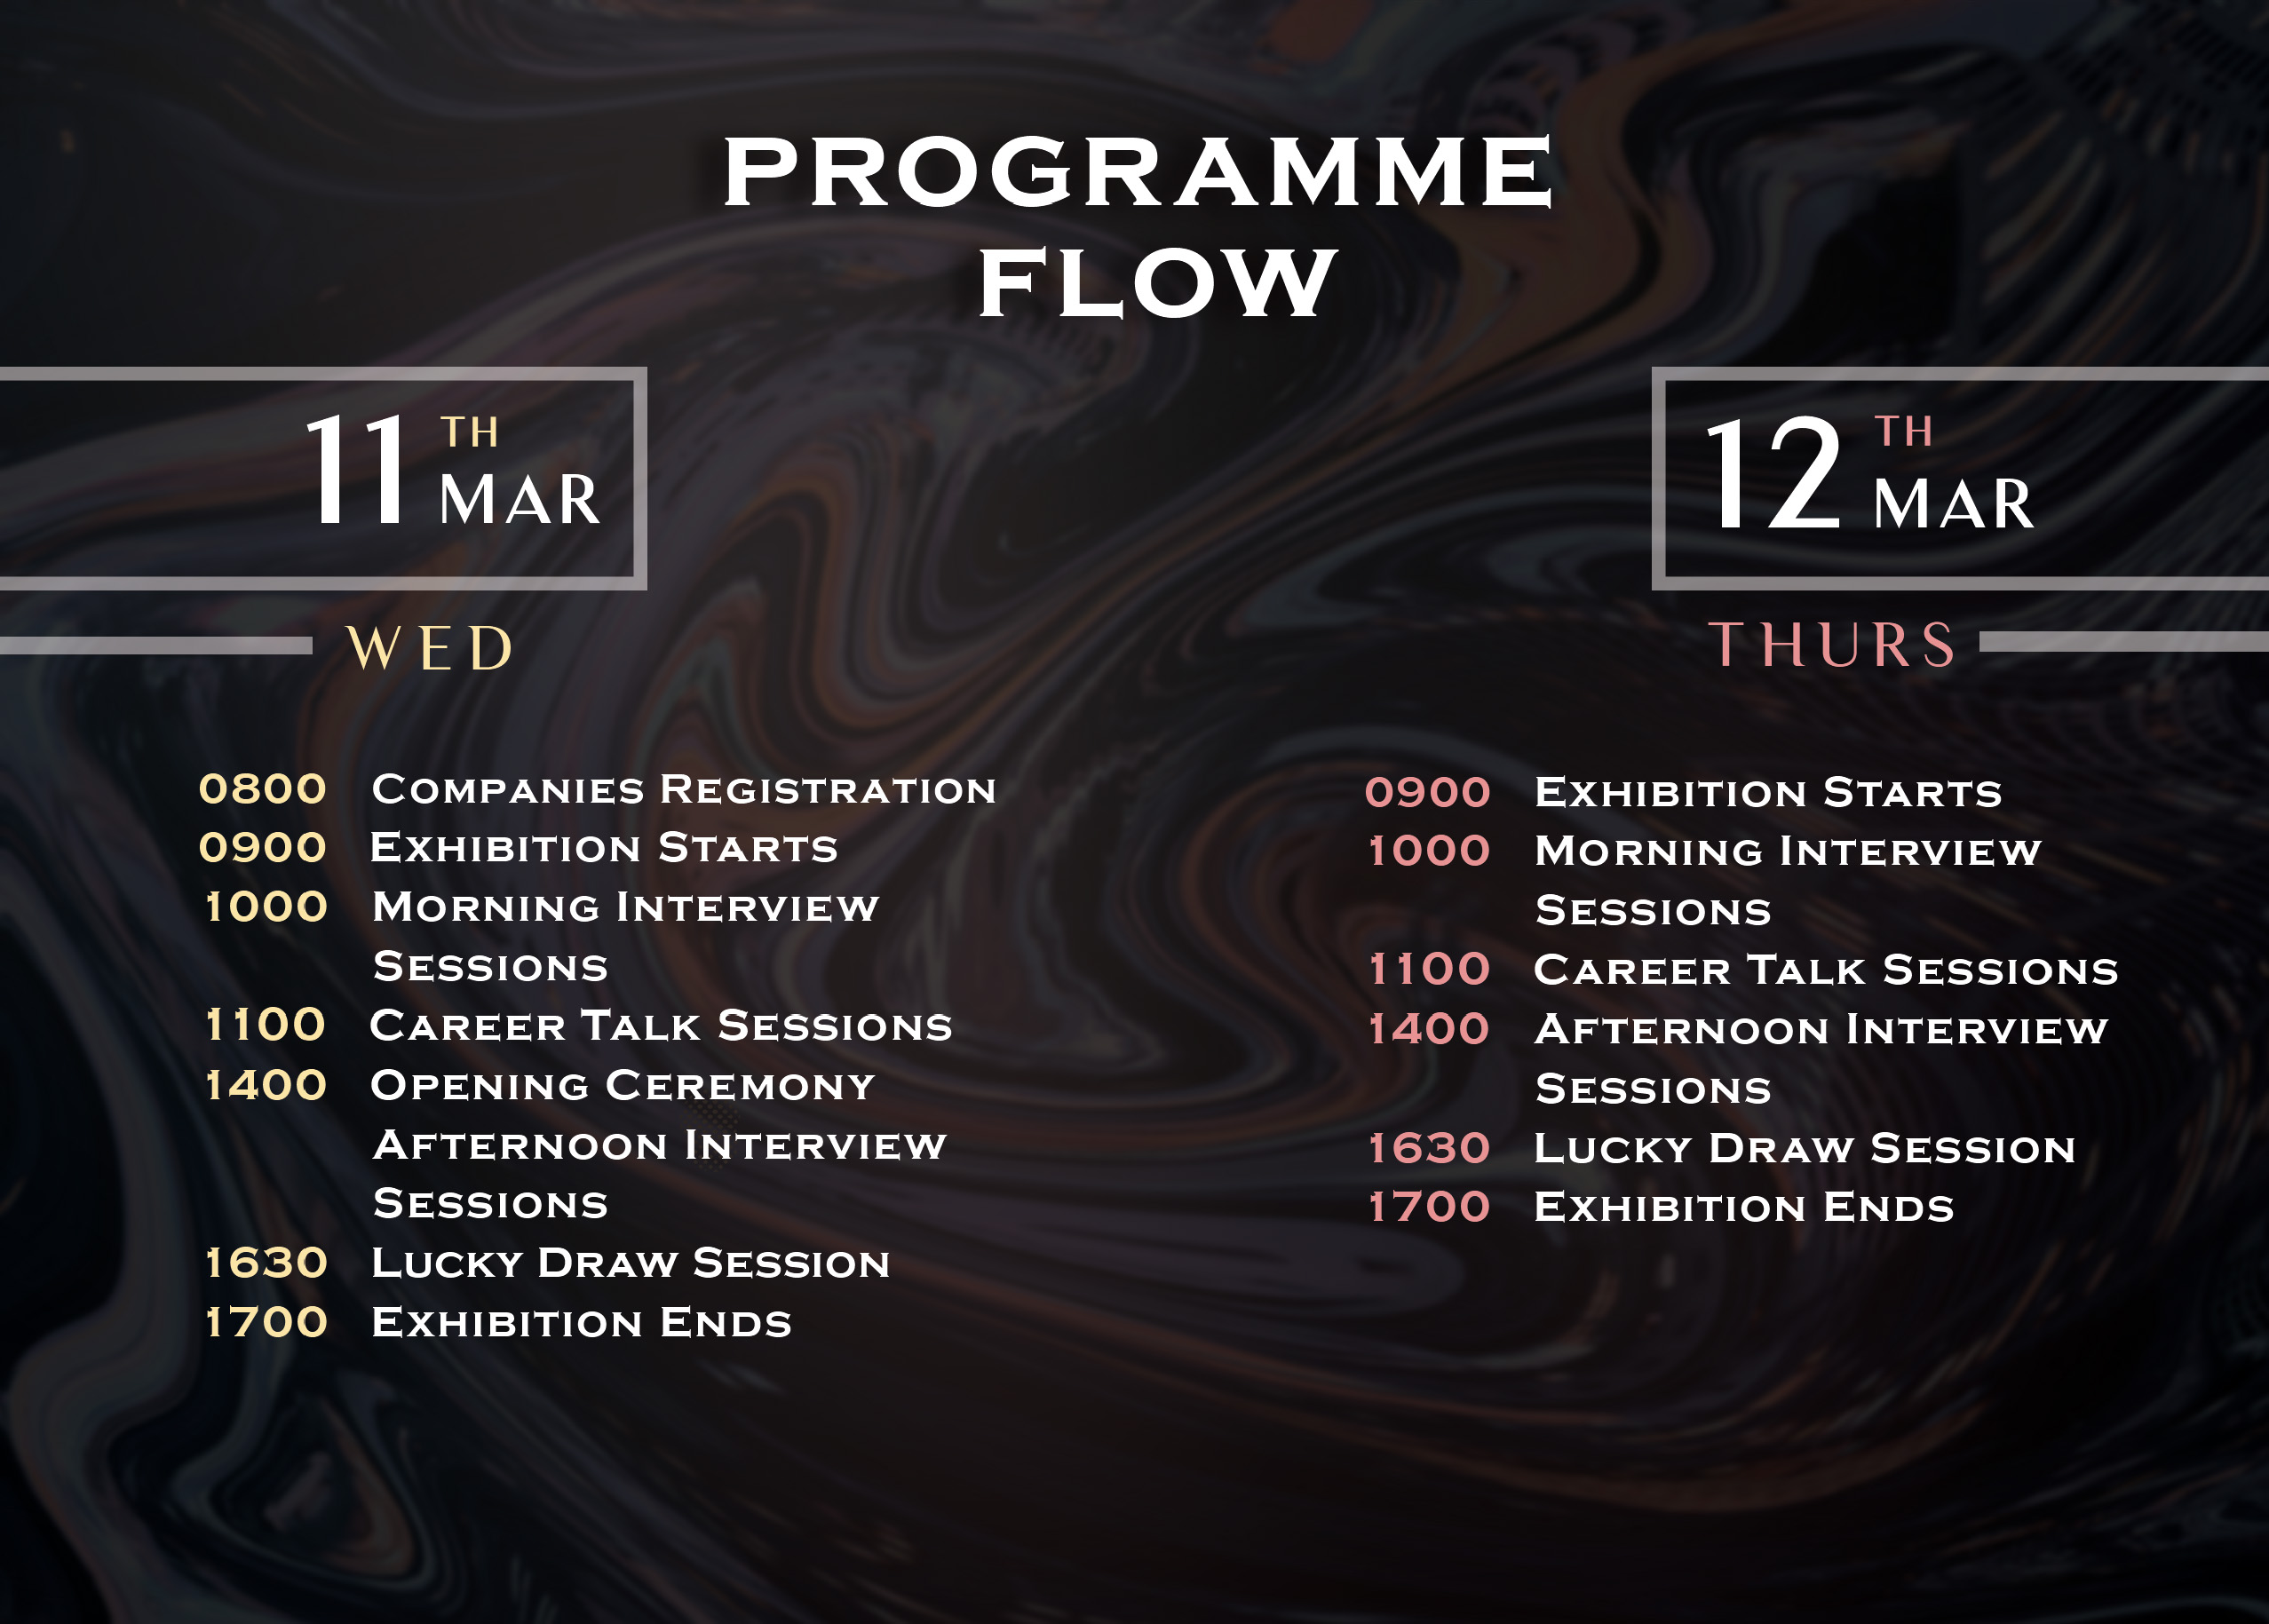 Programme Flow 2020